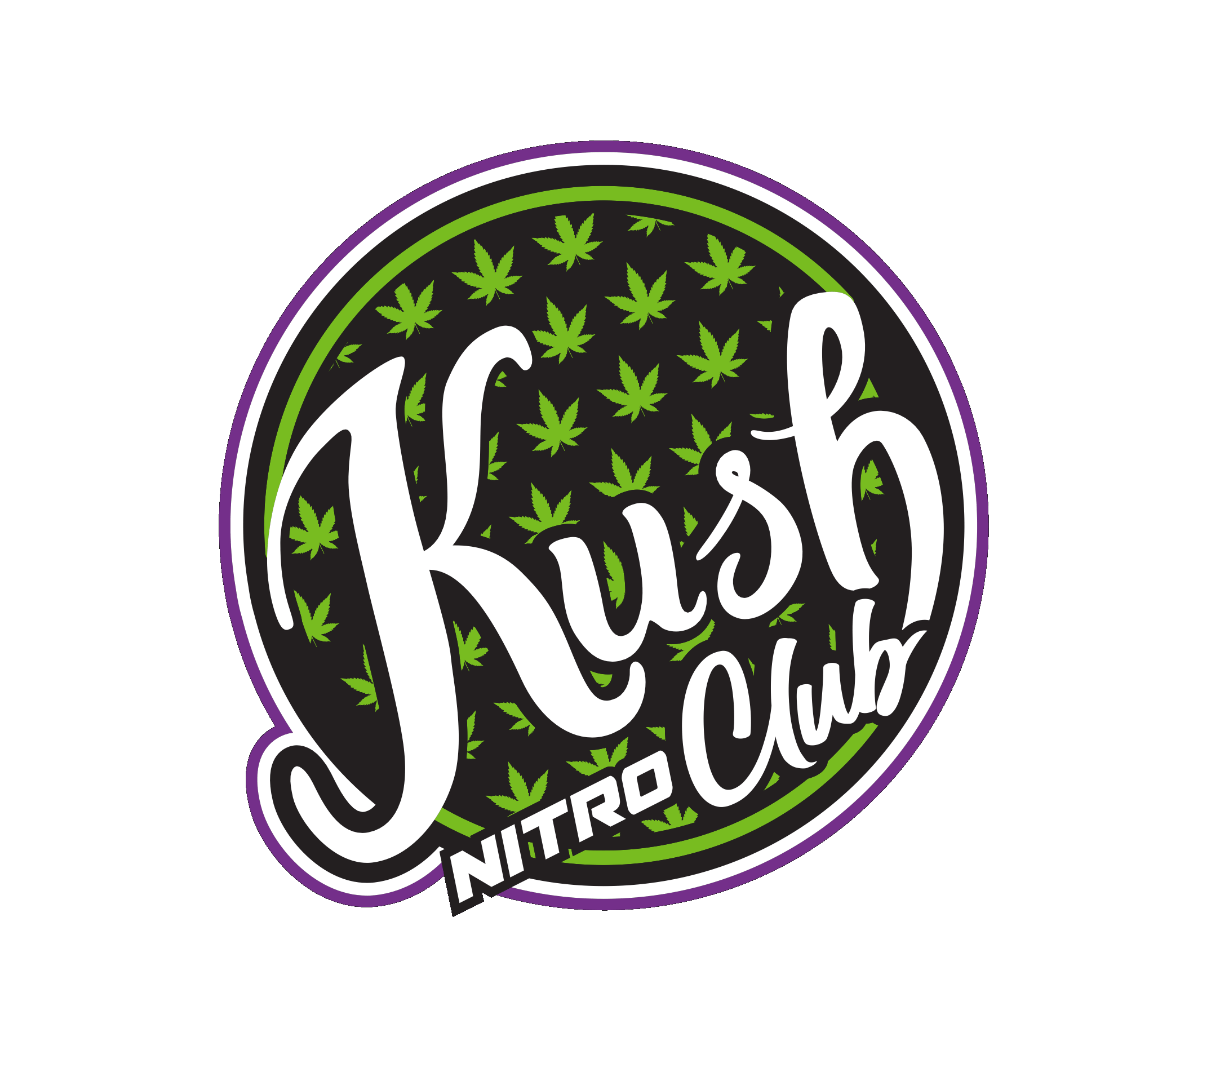 Kush Nitro Club logo